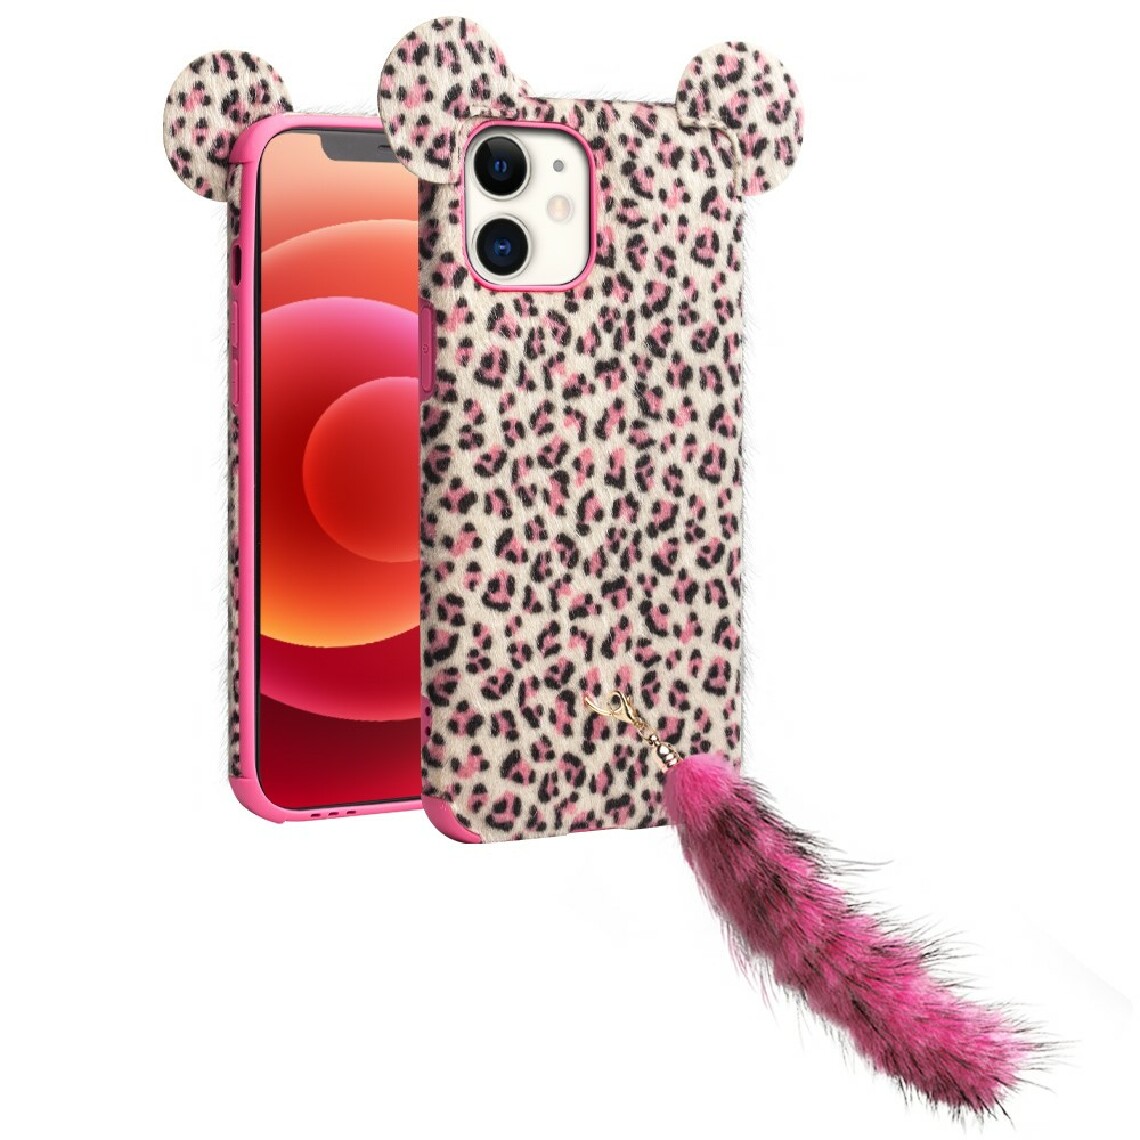 Qialino - Coque en TPU peluche peau de léopard enduite avec oreille et queue en peluche rose pour votre Apple iPhone 12 mini - Coque, étui smartphone